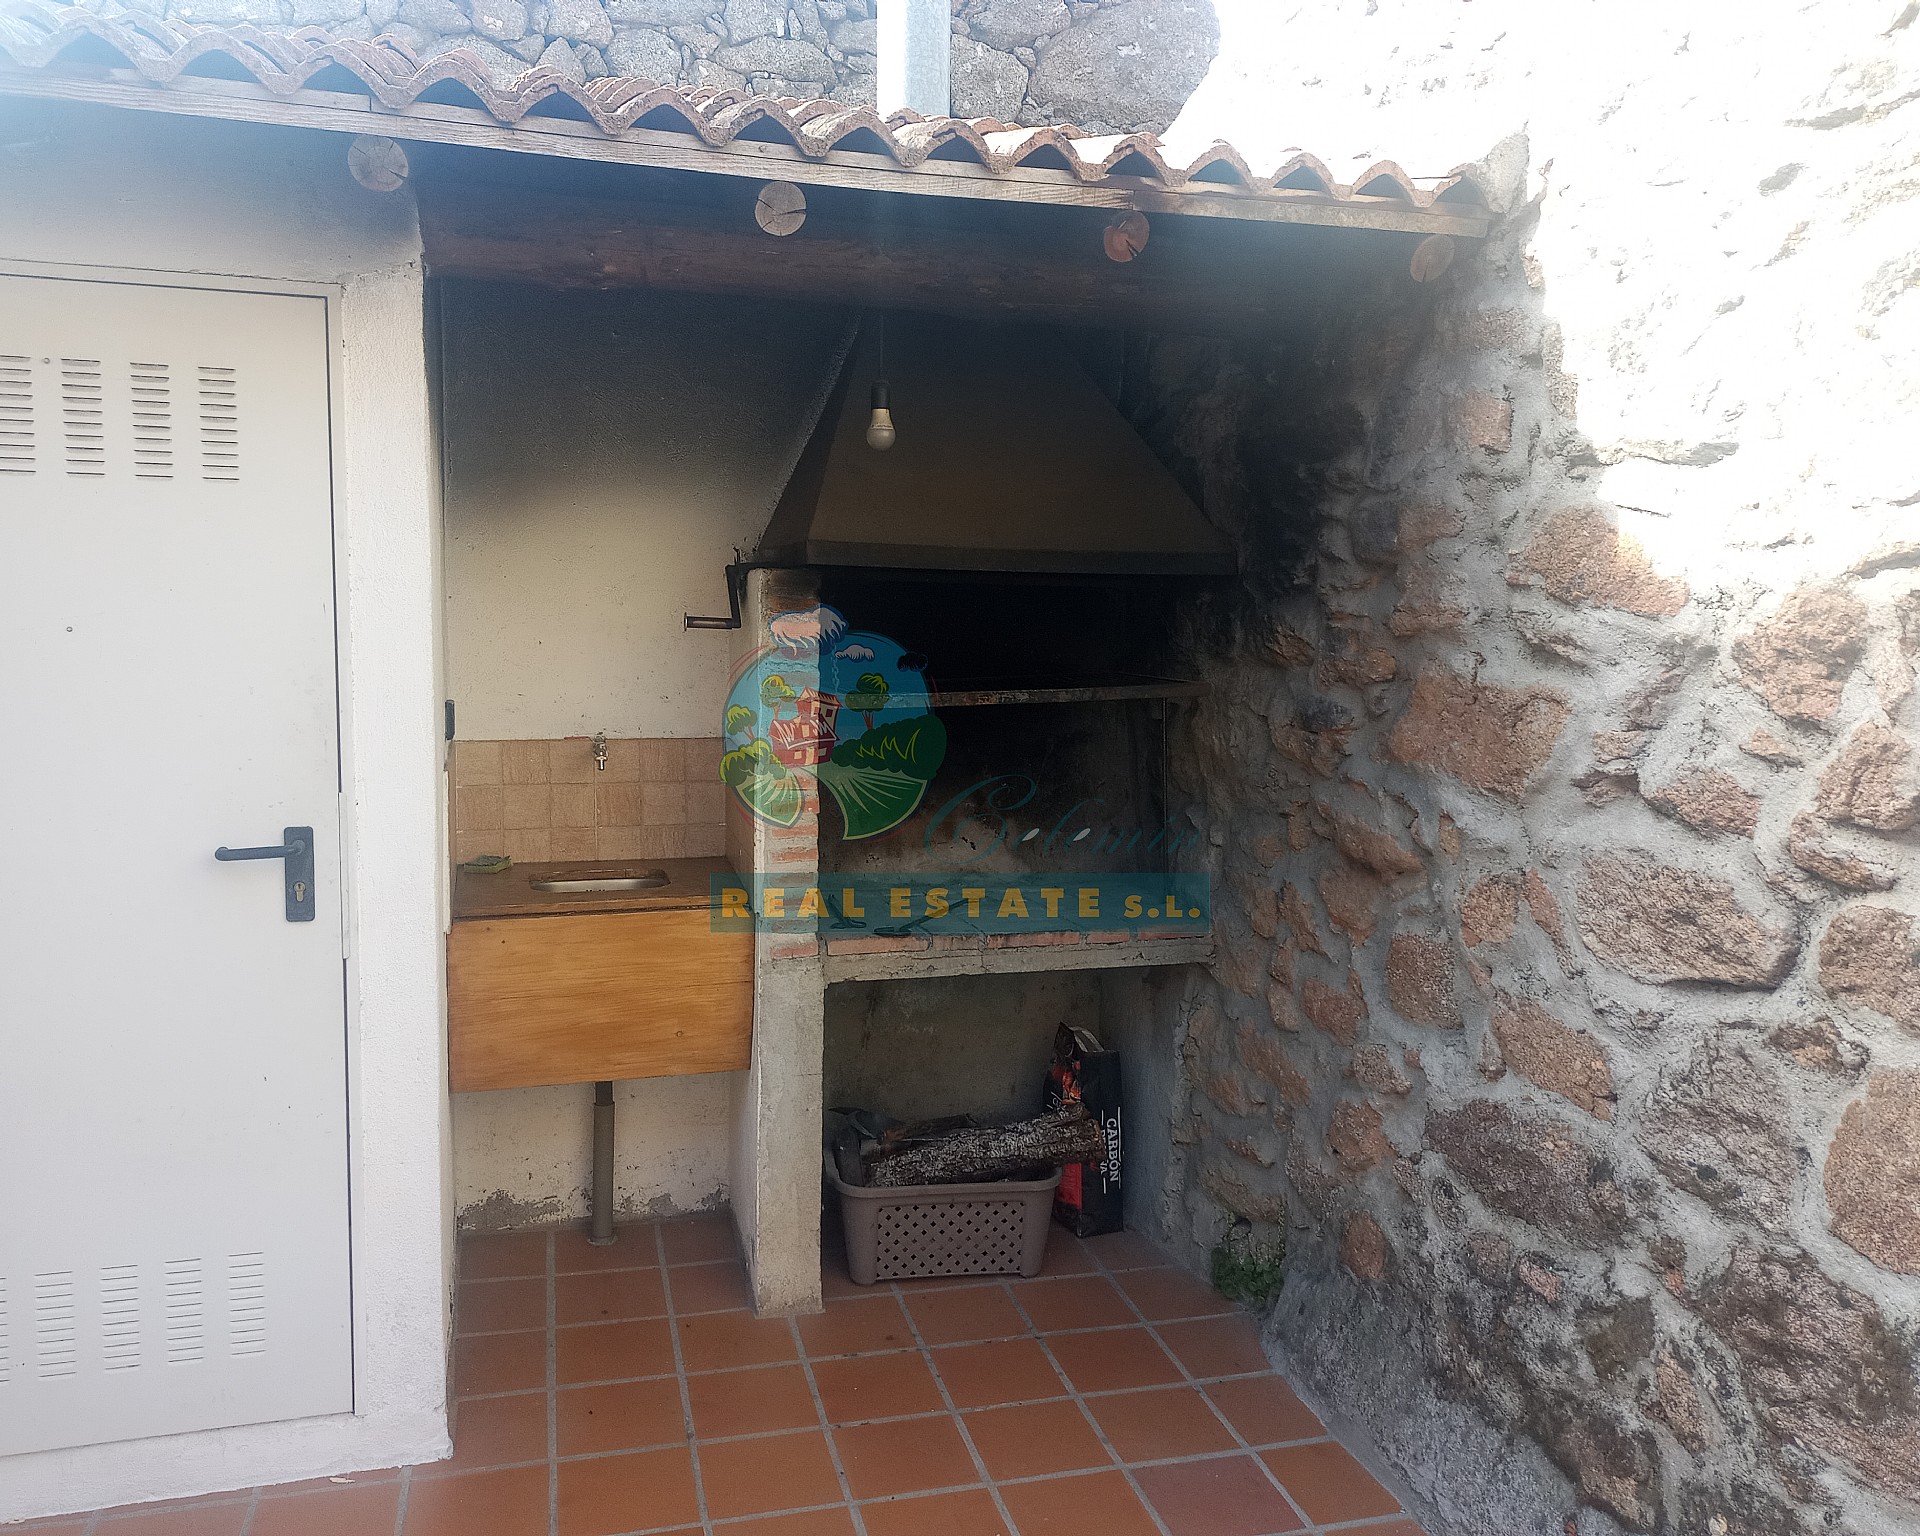 Casa turismo rural en Sierra de Gredos.